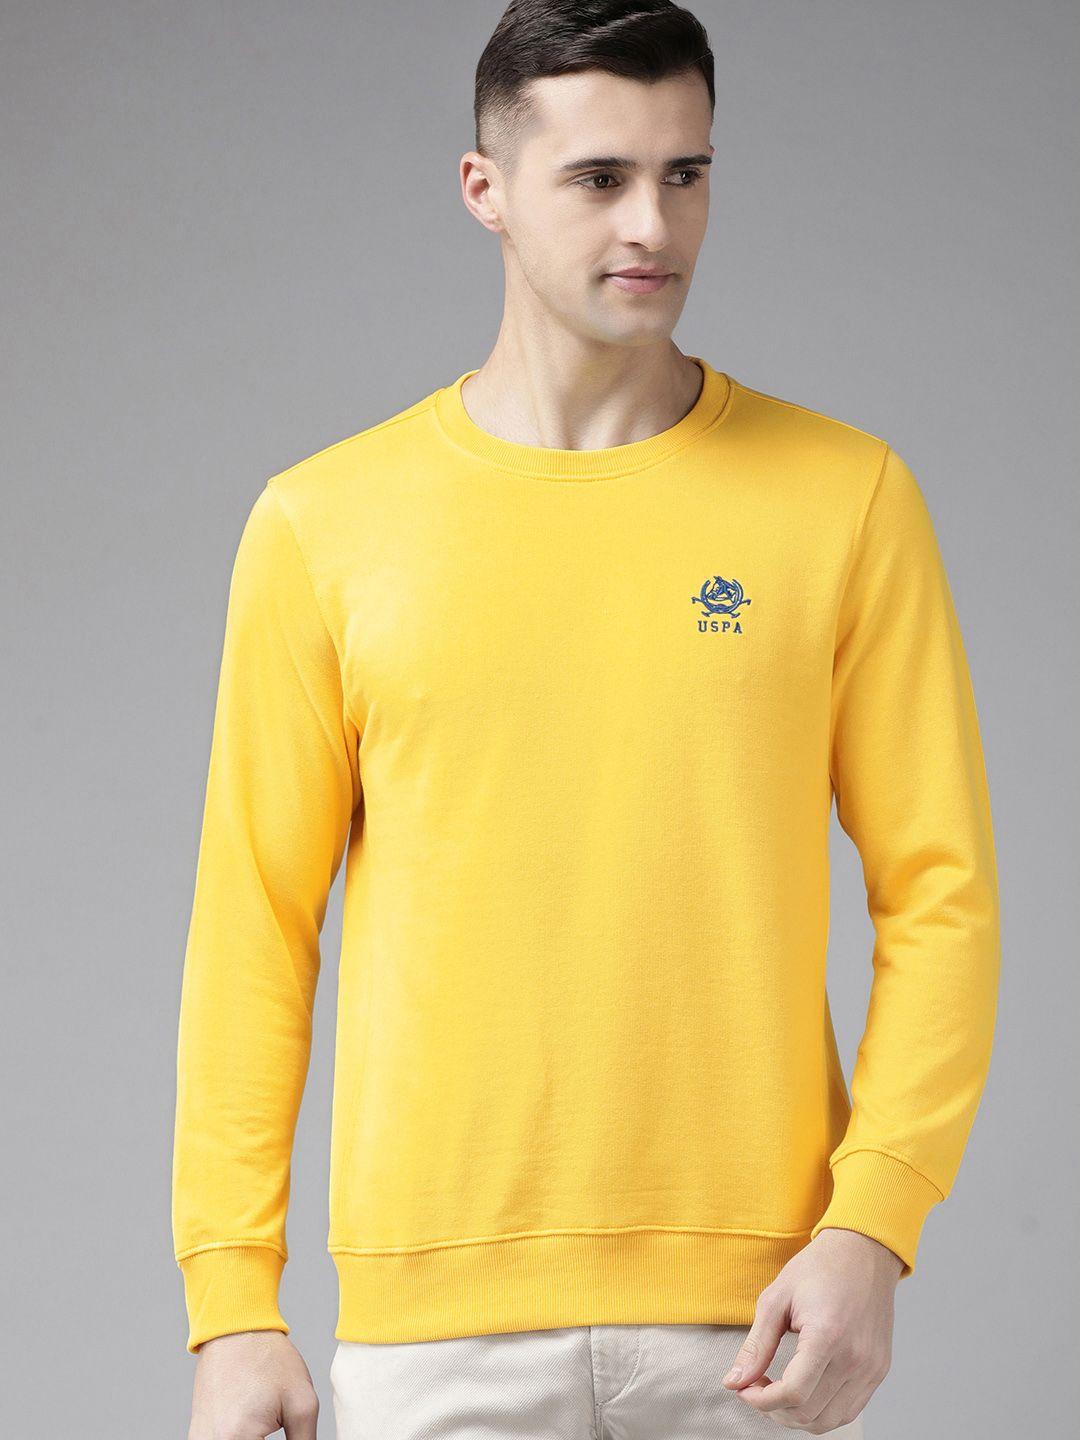 u.s.-polo-assn.-men-yellow-sweatshirt